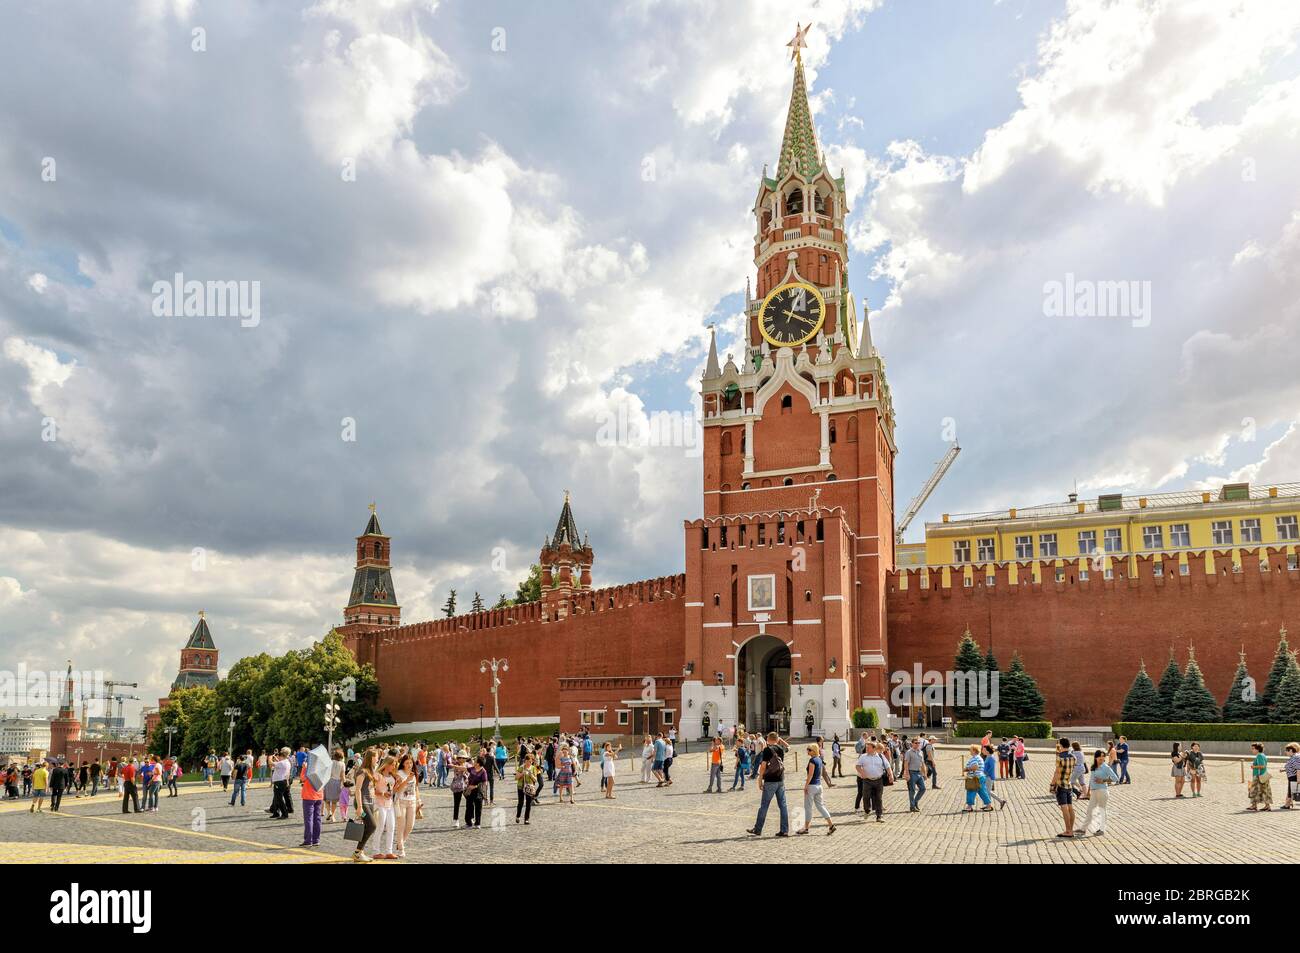 MOSKAU - 10. JULI 2015: Touristen besuchen den Roten Platz. Der berühmte Spasskaya Turm wurde erst kürzlich nach der Restaurierung eröffnet. Stockfoto